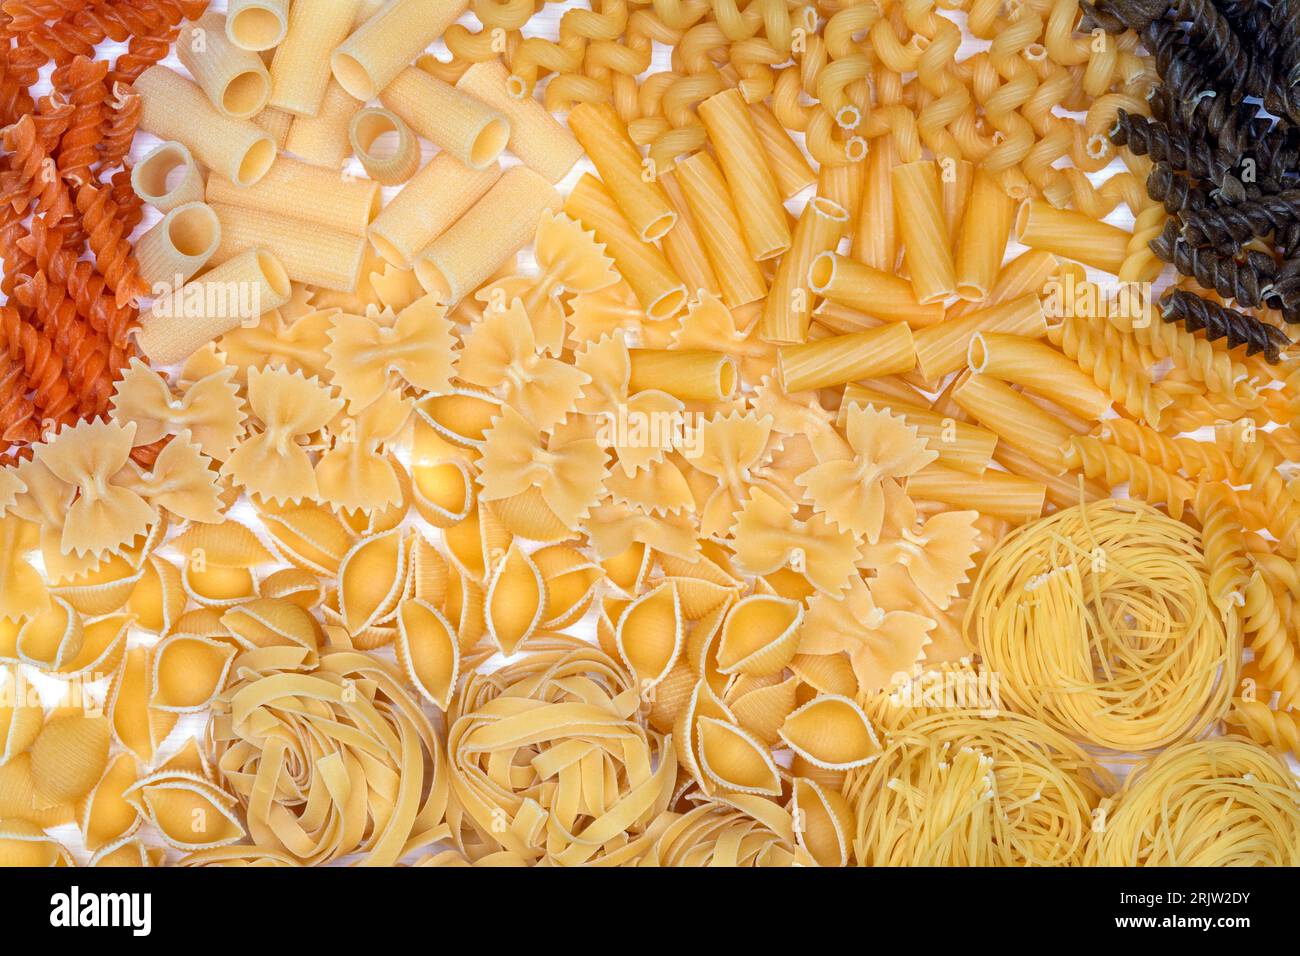 Tipi di pasta - Rigatoni, spirali, Farfalle, Tagliatelle, Tricolore Fusilli e Vermicelli. Foto Stock